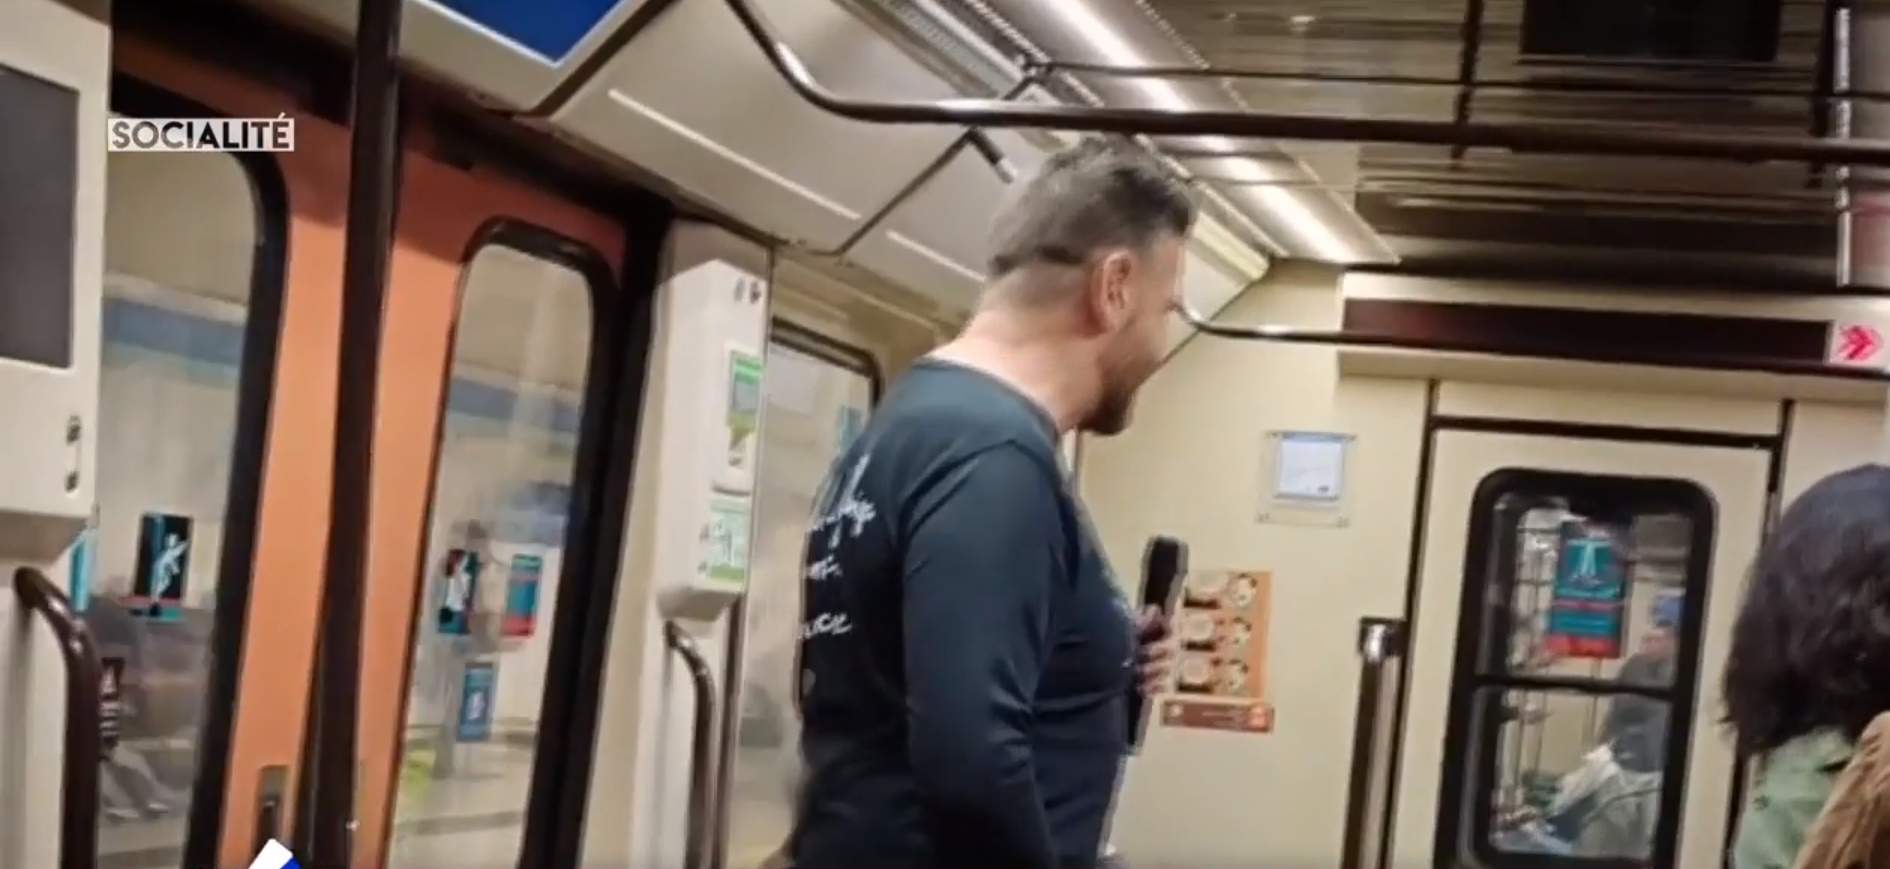 Cantante catalán VIP arruinado actúa en el metro "por necesidad" pidiendo limosna